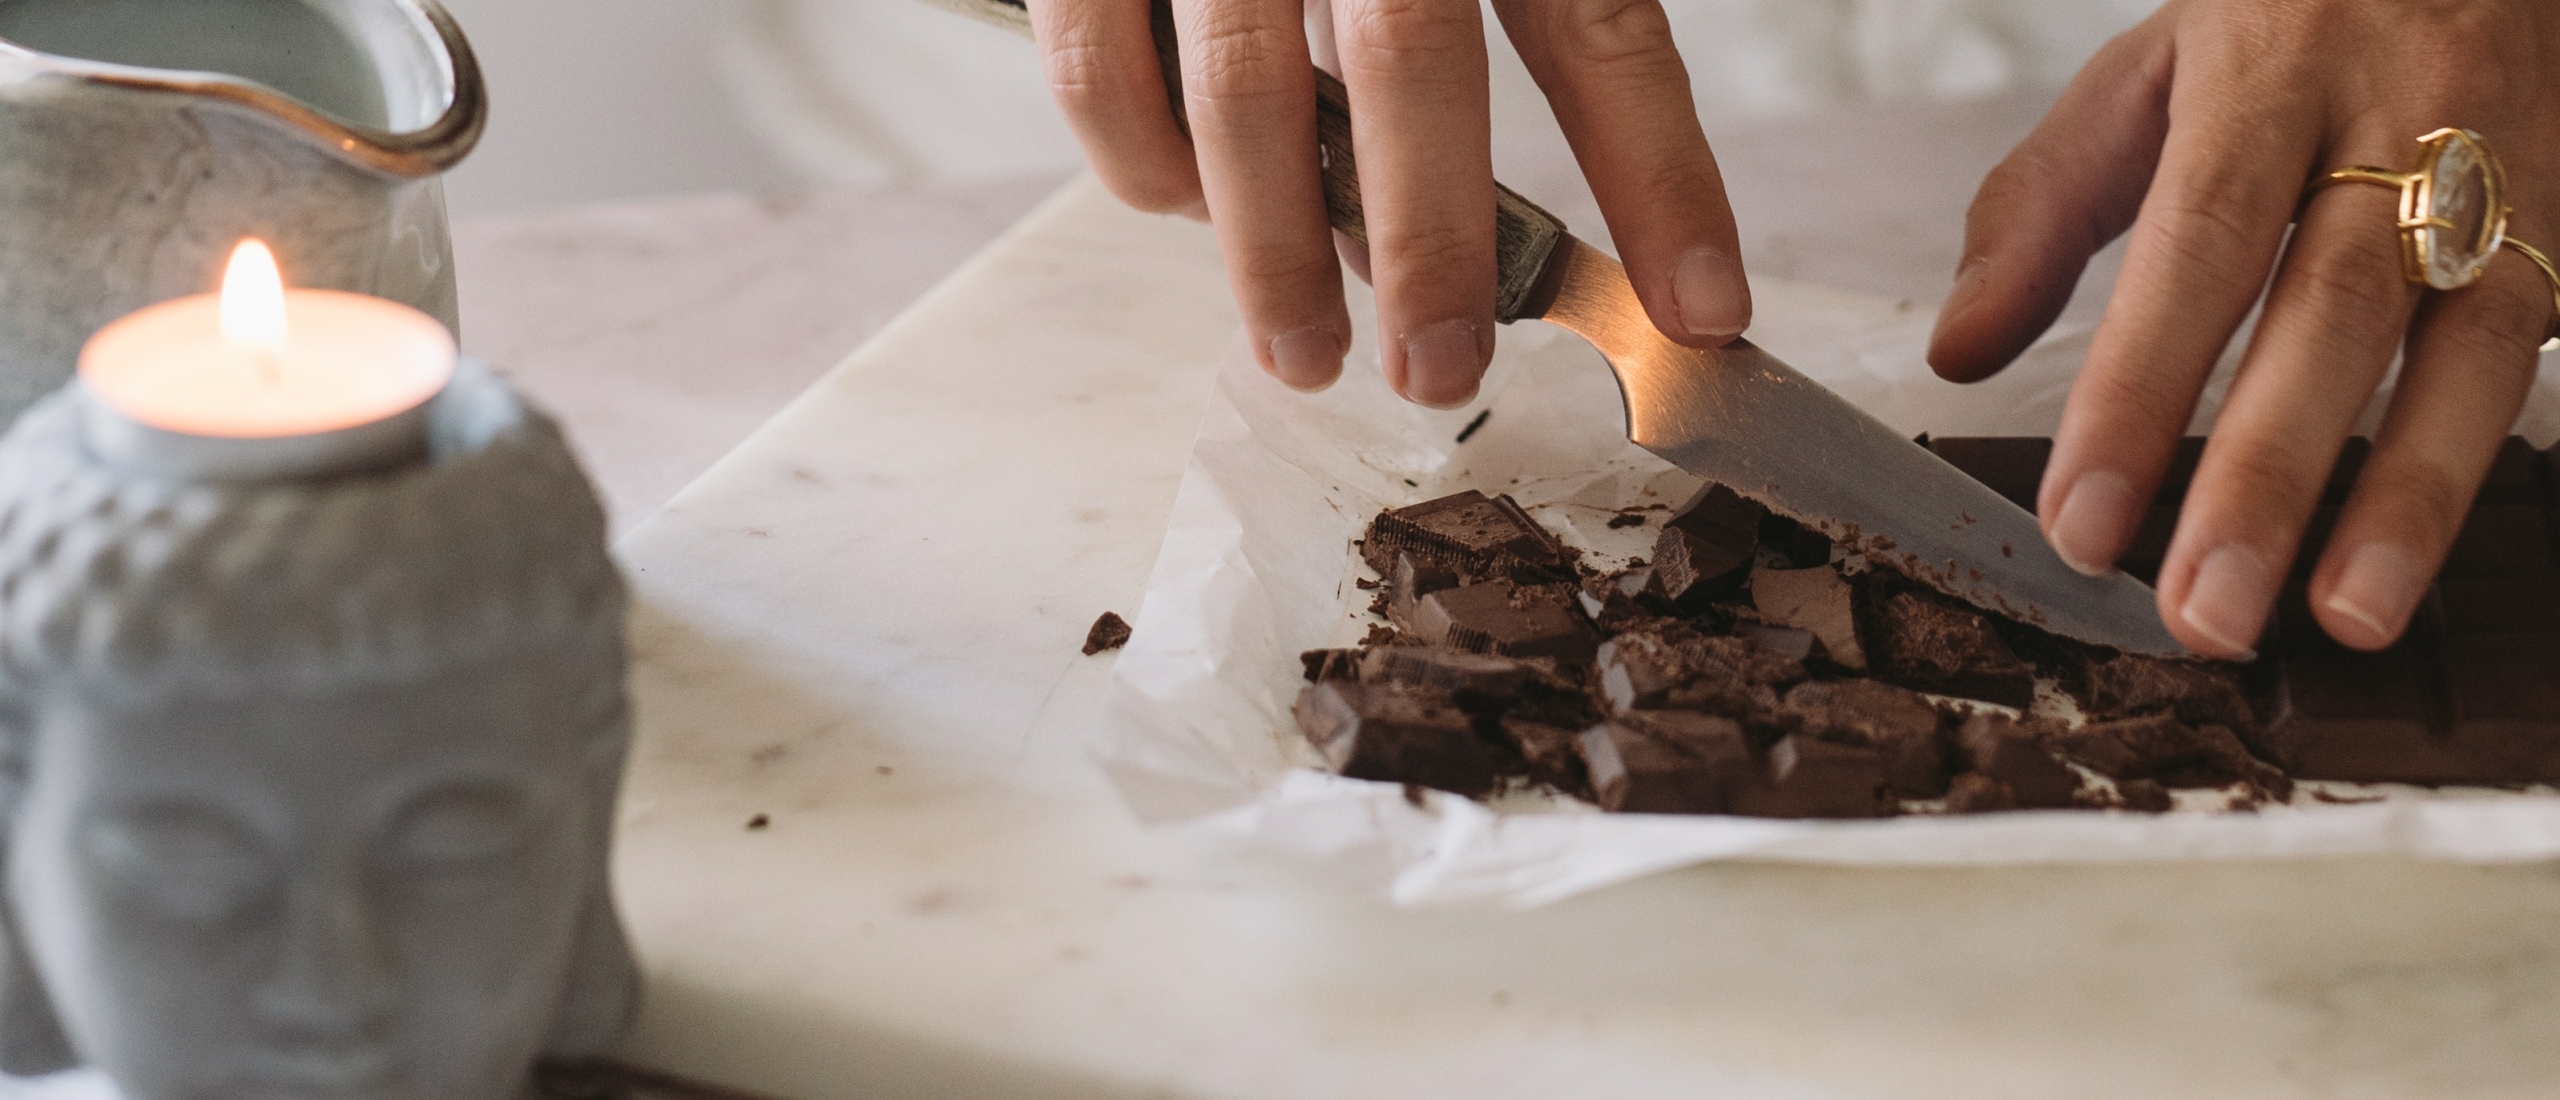 Hoe maak je ceremoniële cacao?